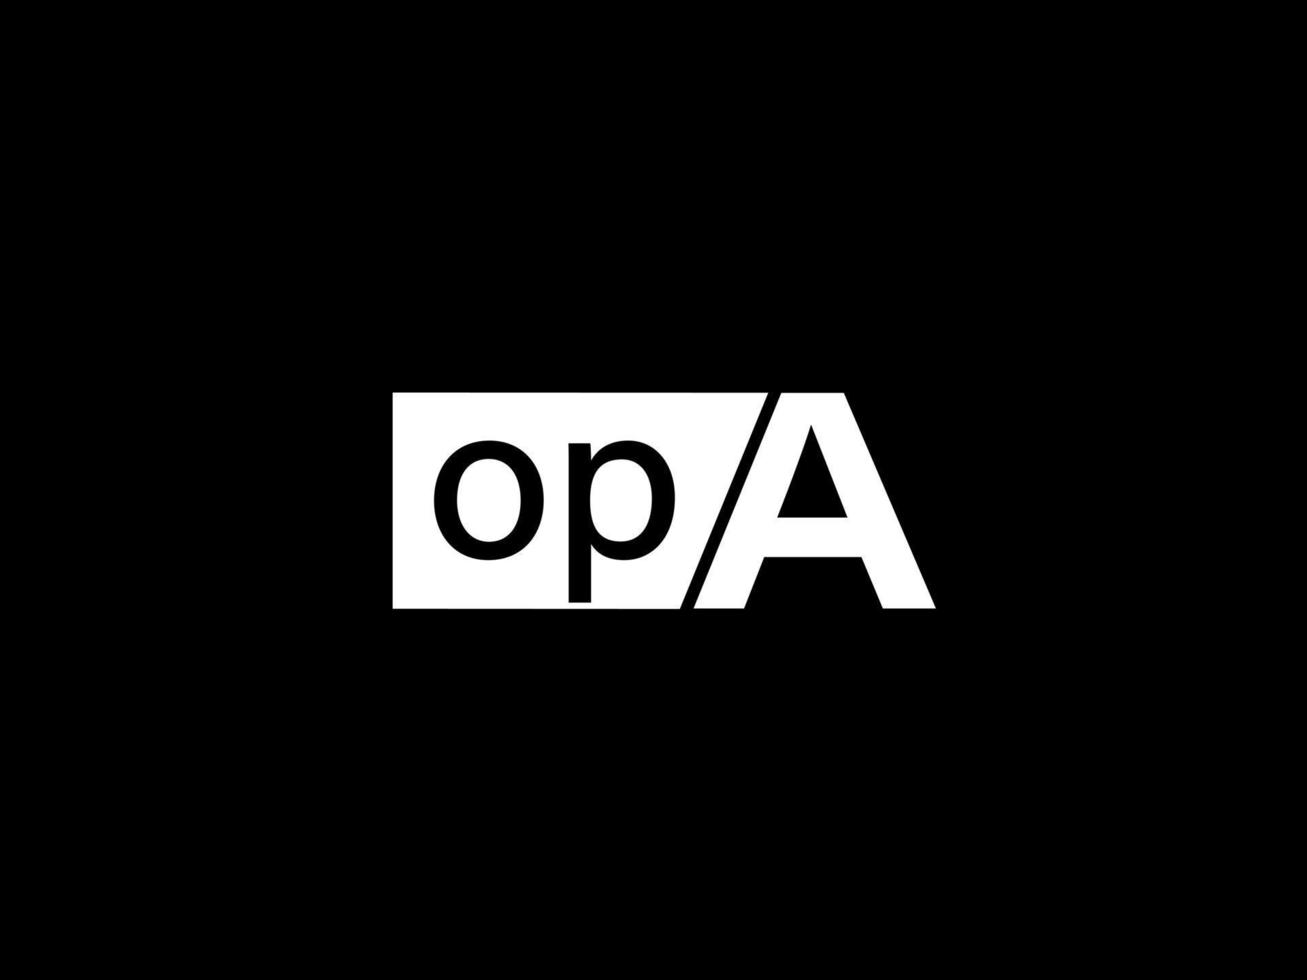 logo opa et art vectoriel de conception graphique, icônes isolées sur fond noir